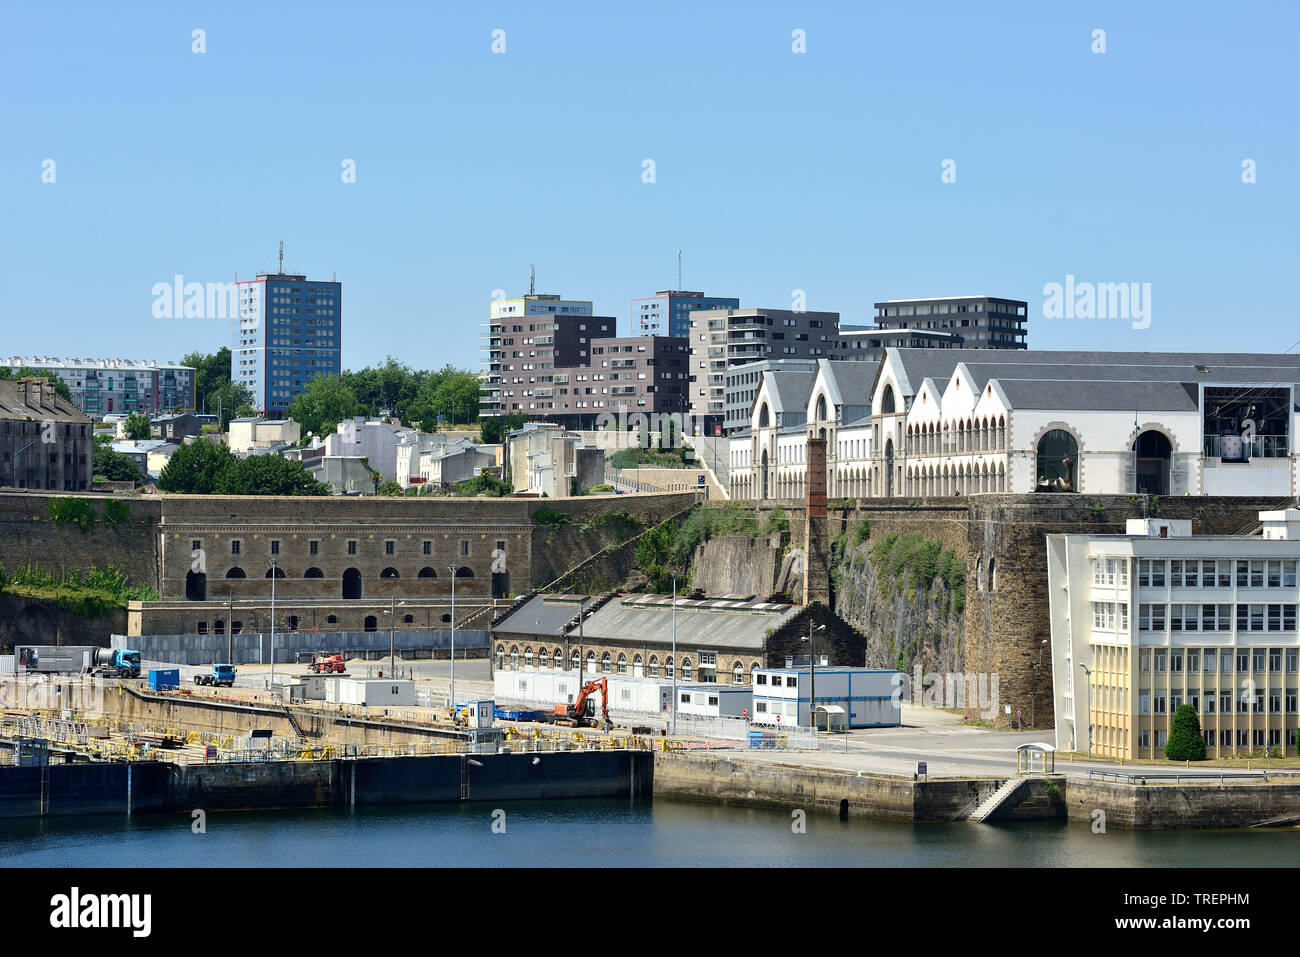 Brest (Bretagne, nord-ouest de la France) : l'immobilier sur la rive droite, dans le quartier de Les Capucins, le long de la rivière Penfeld Banque D'Images